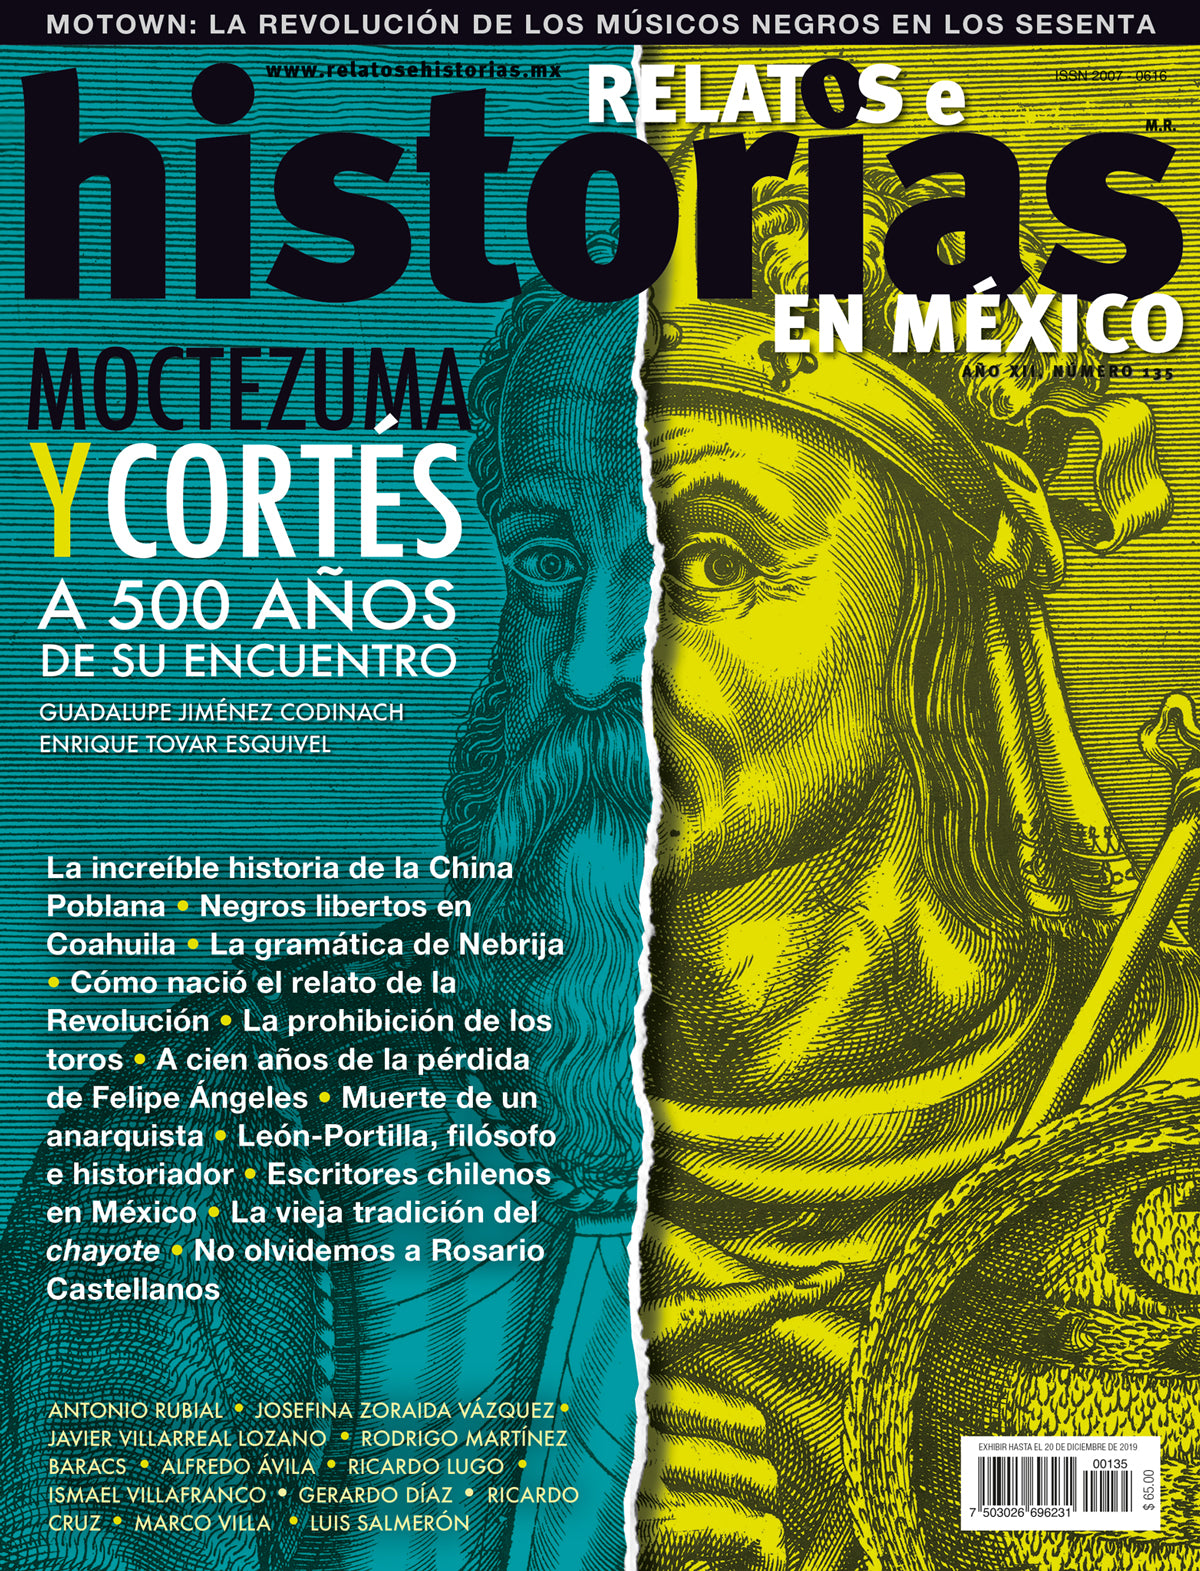 Moctuzma y Cortés a 500 años de su encuentro